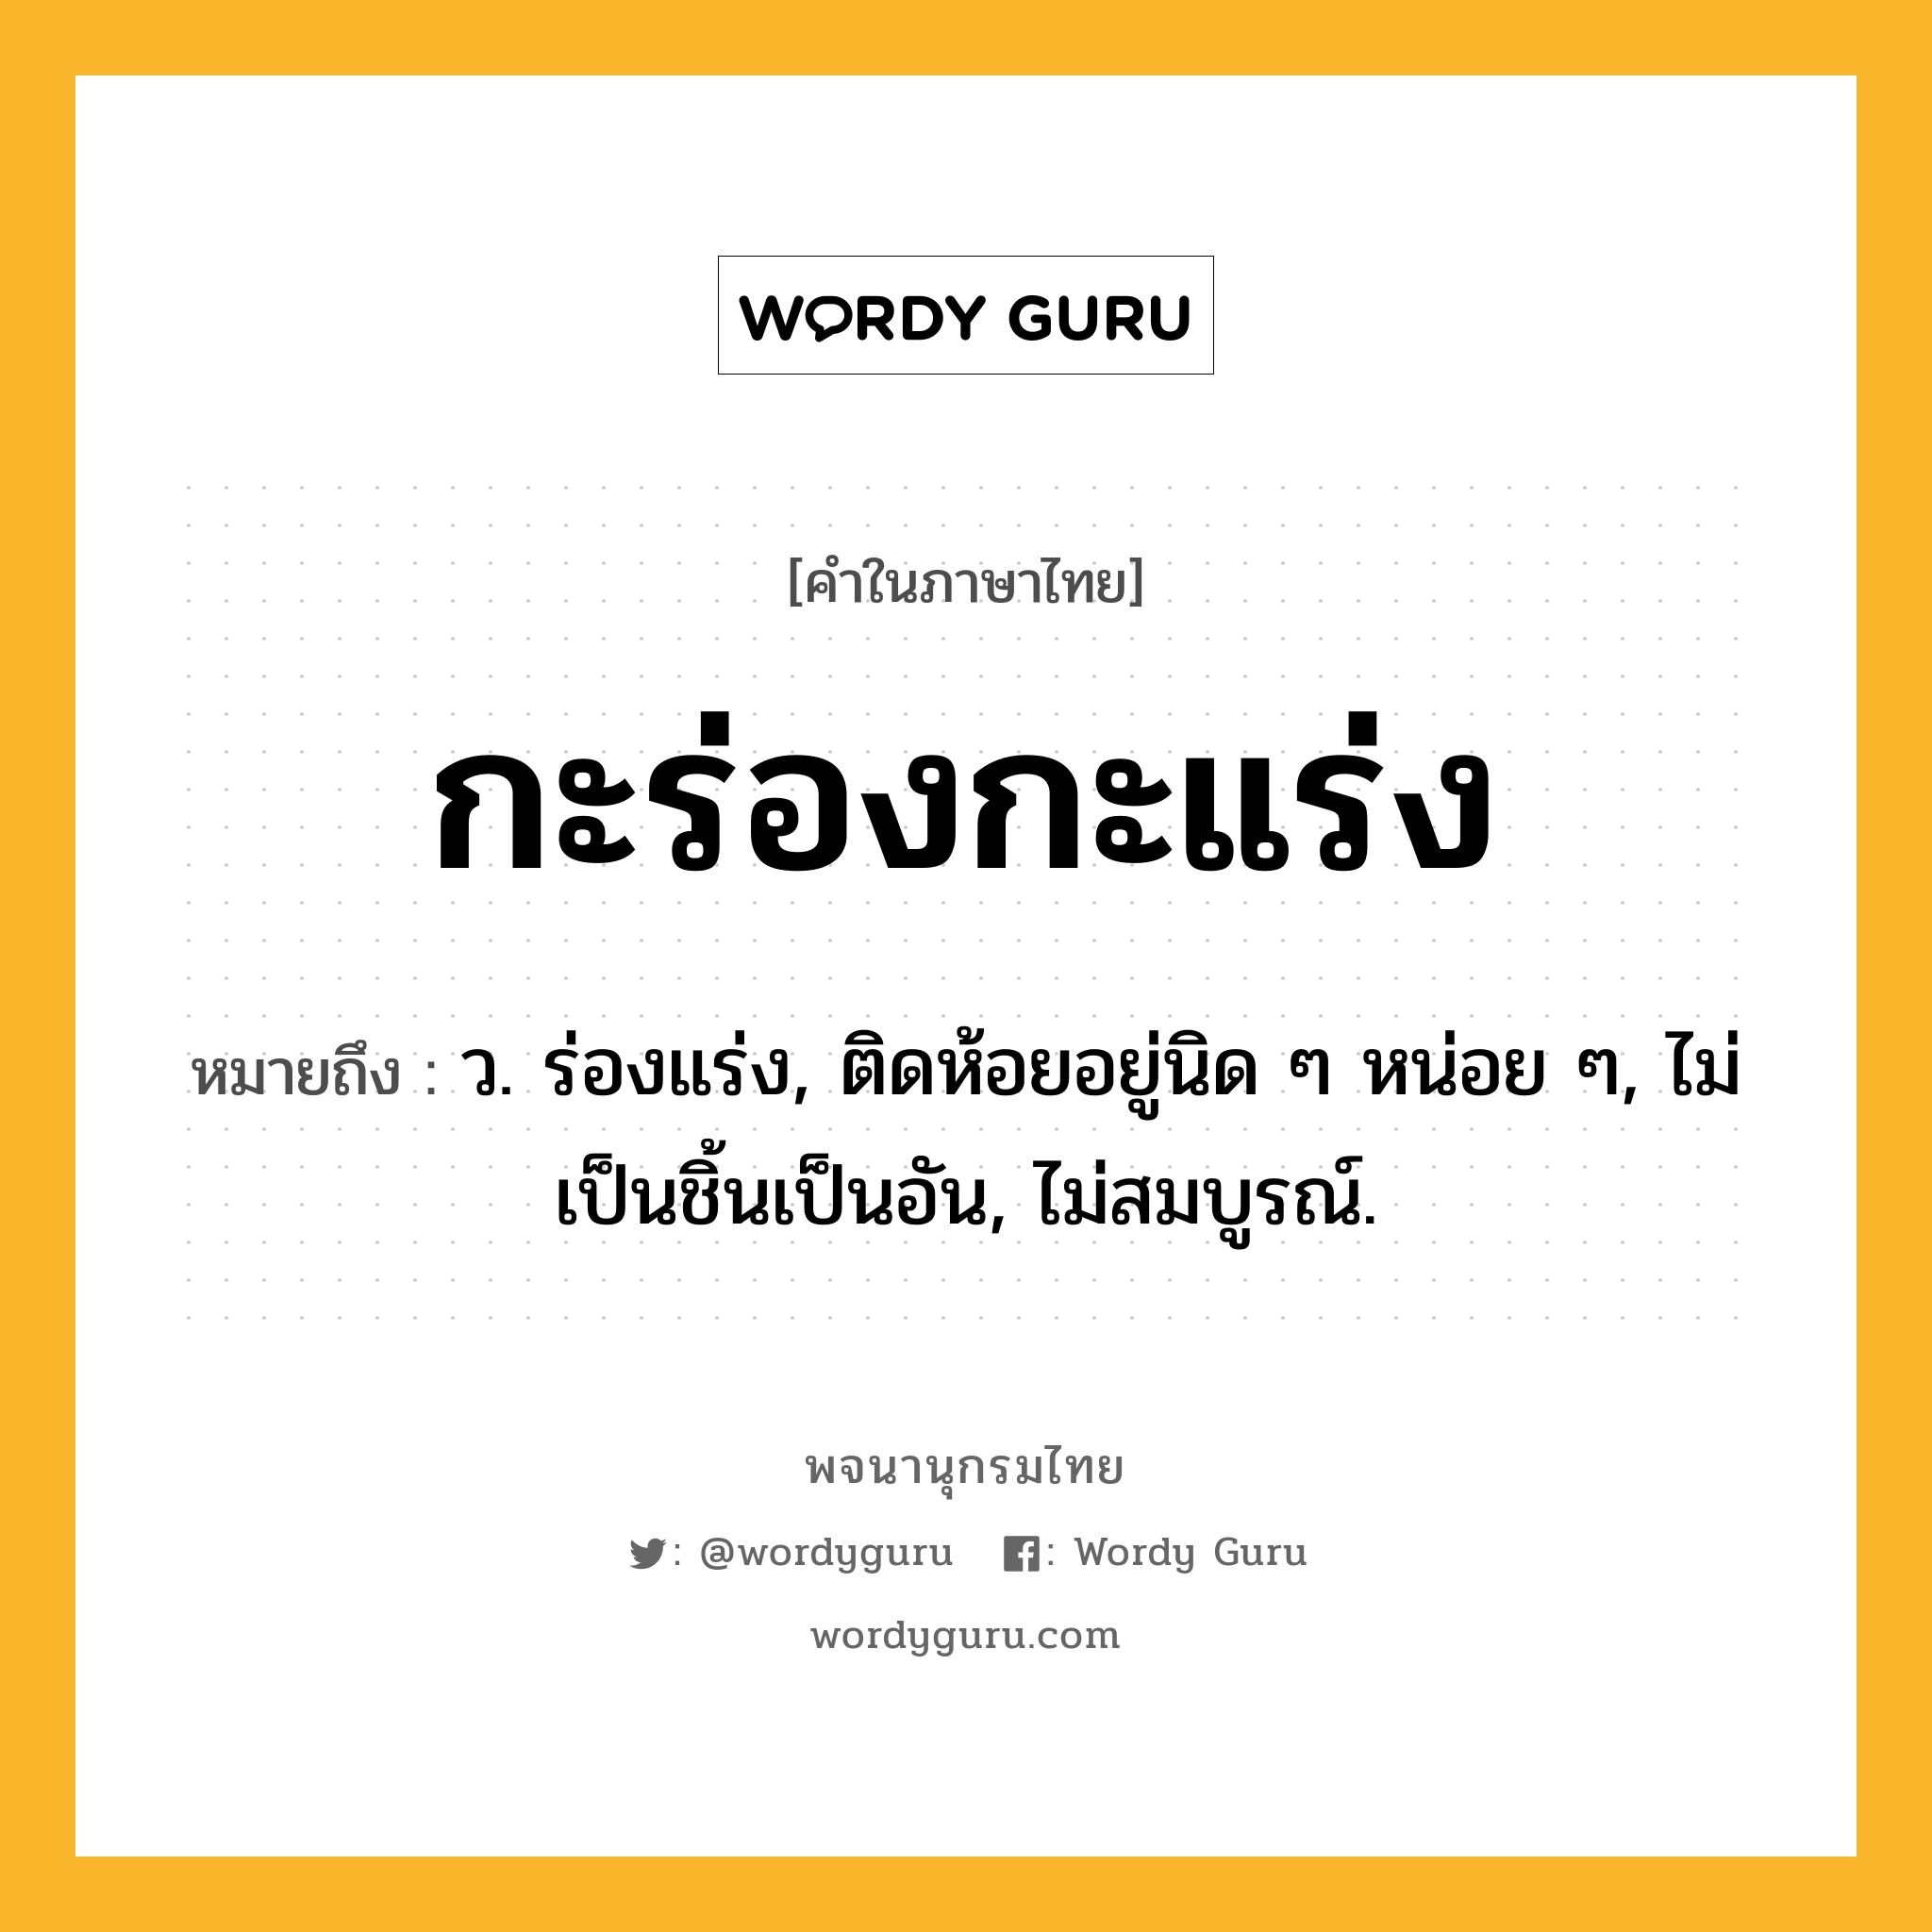 กะร่องกะแร่ง ความหมาย หมายถึงอะไร?, คำในภาษาไทย กะร่องกะแร่ง หมายถึง ว. ร่องแร่ง, ติดห้อยอยู่นิด ๆ หน่อย ๆ, ไม่เป็นชิ้นเป็นอัน, ไม่สมบูรณ์.